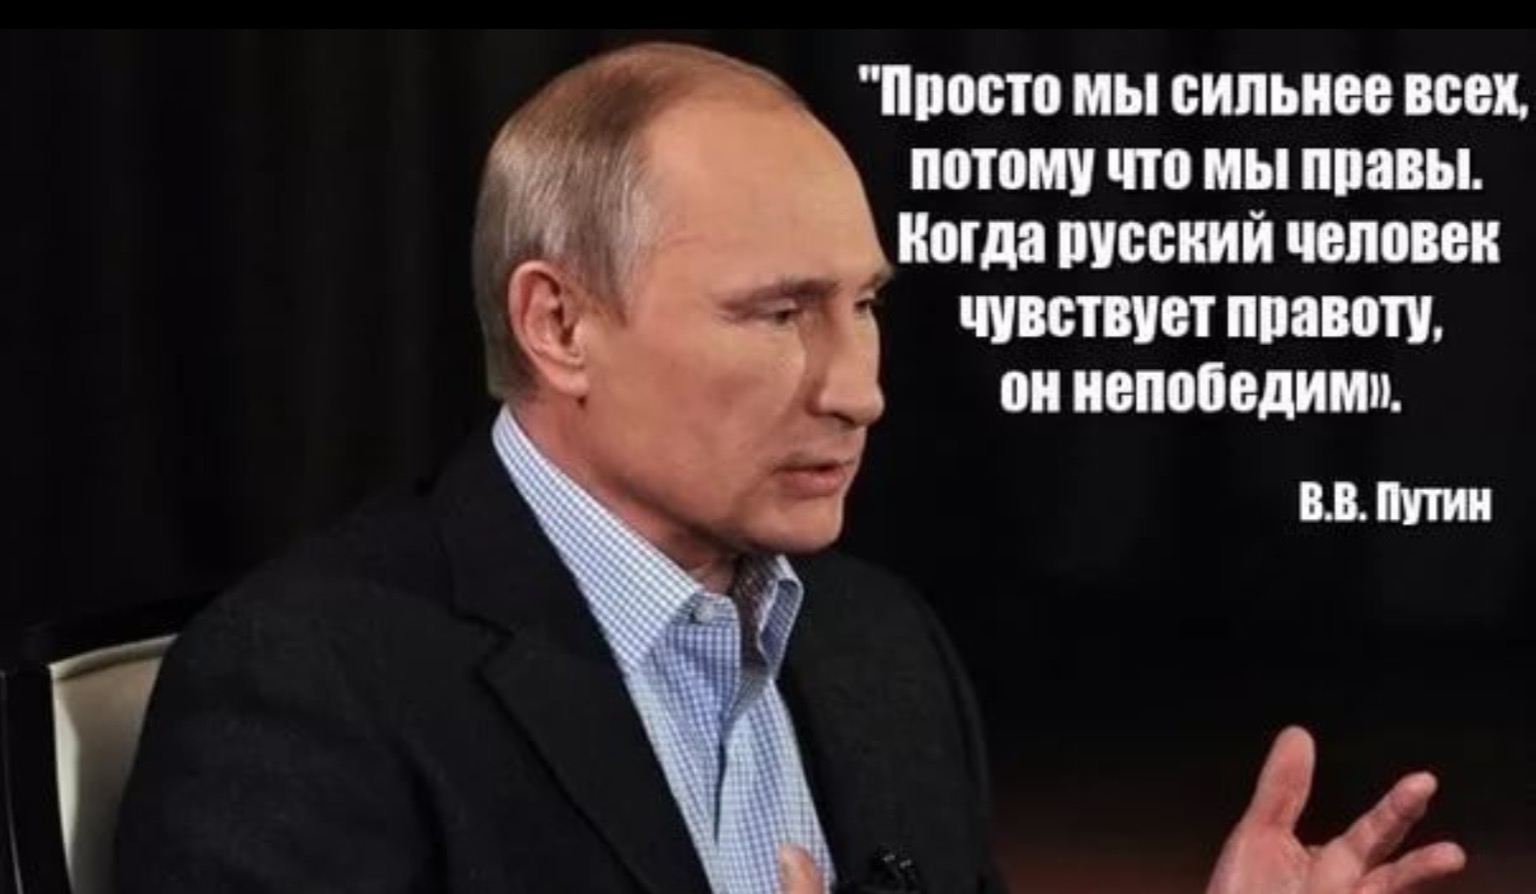 Со своей правотой. Высказывания Путина. Высказывания о Путине.